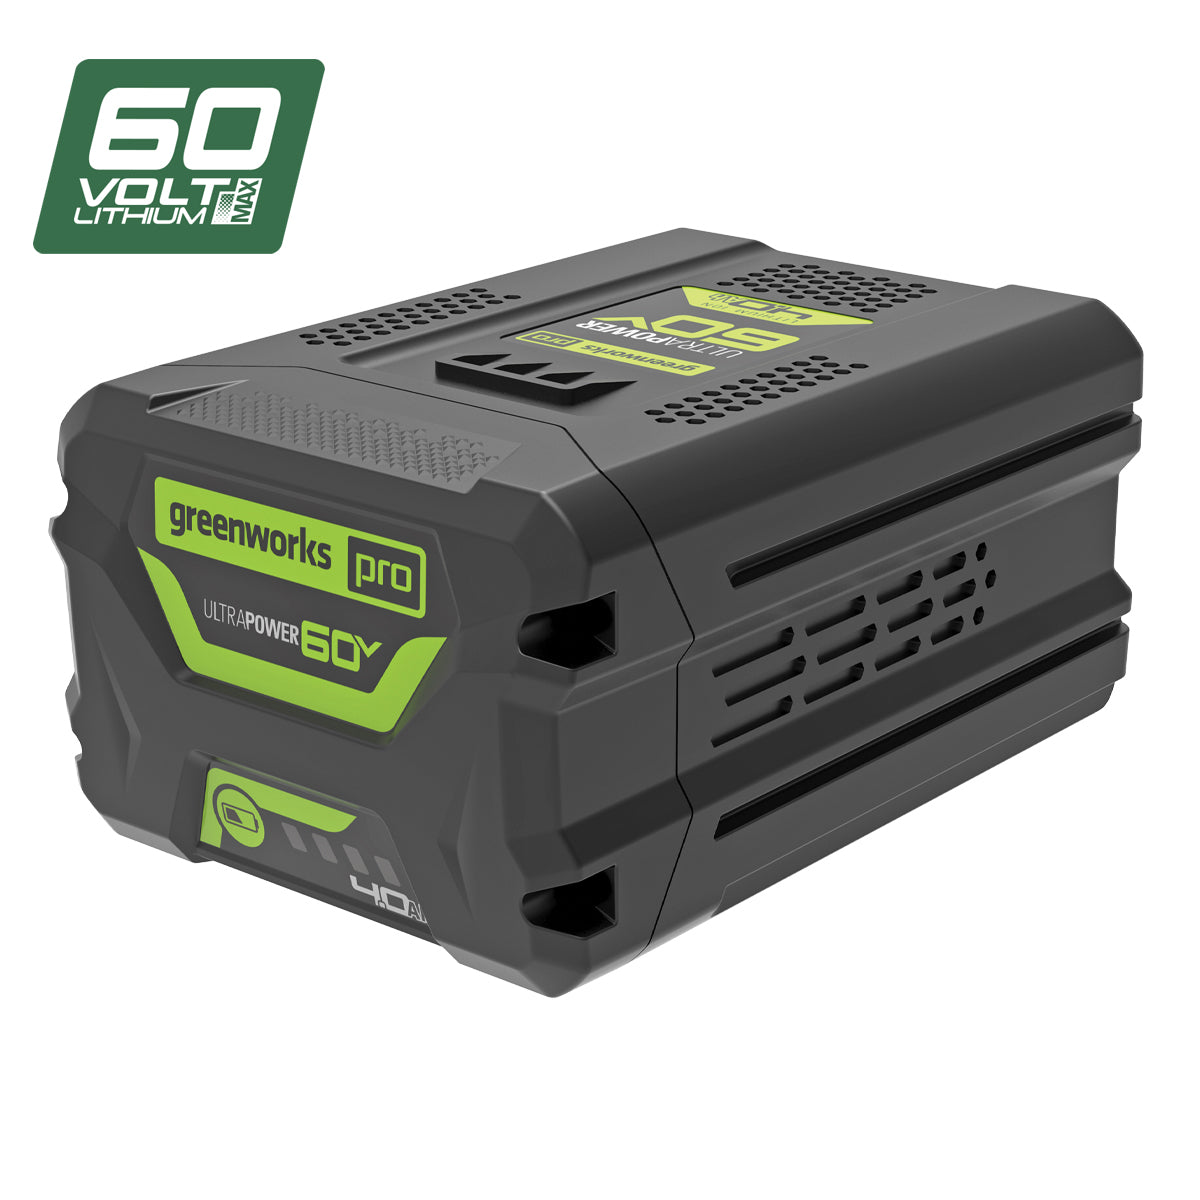 Greenworks 60V Pro Battery 4.0Ah